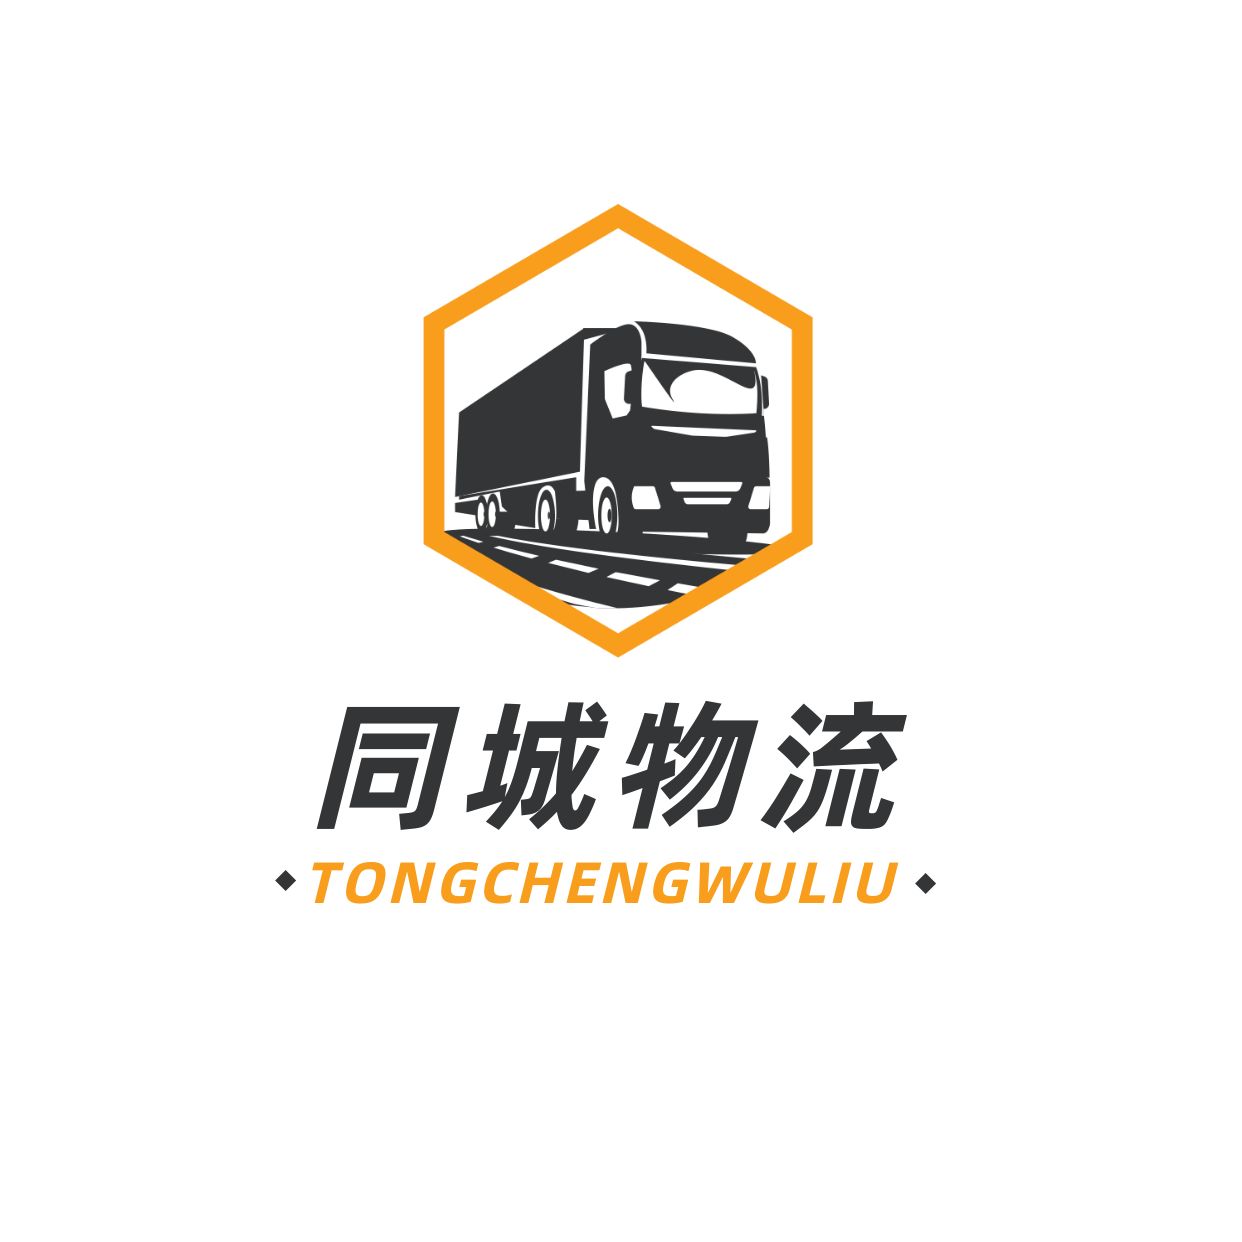 汽车六边形货车logo